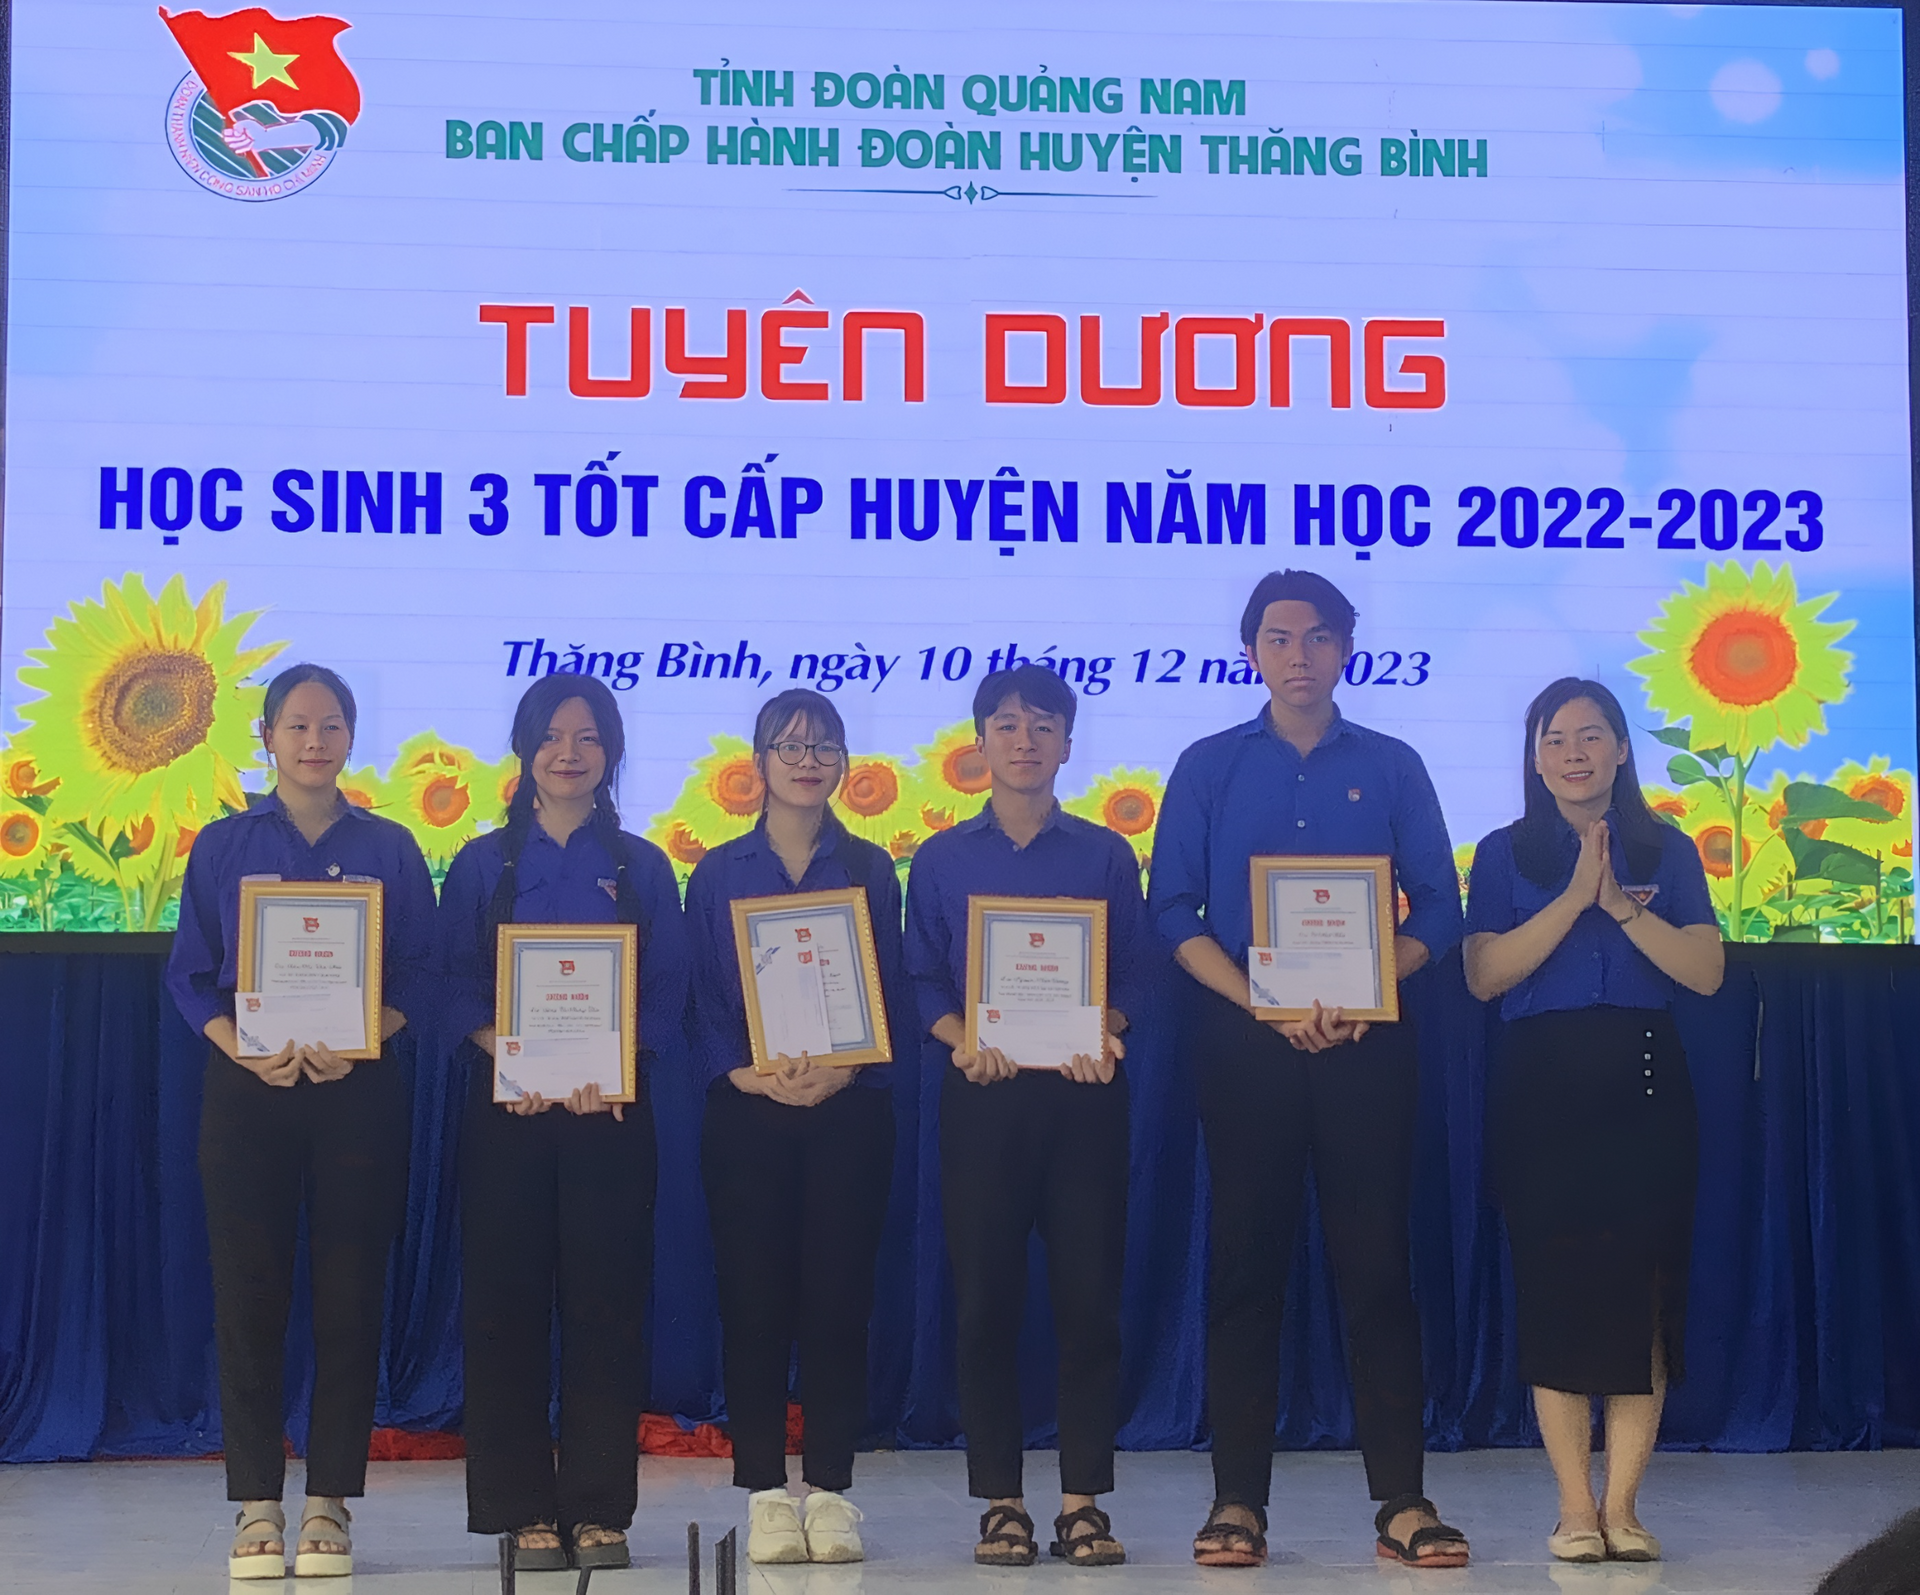 Nguyễn Nhật Dương  (đứng giữa) vinh dự nhận “Học sinh 3 tốt” huyện Thăng Bình năm 2023.